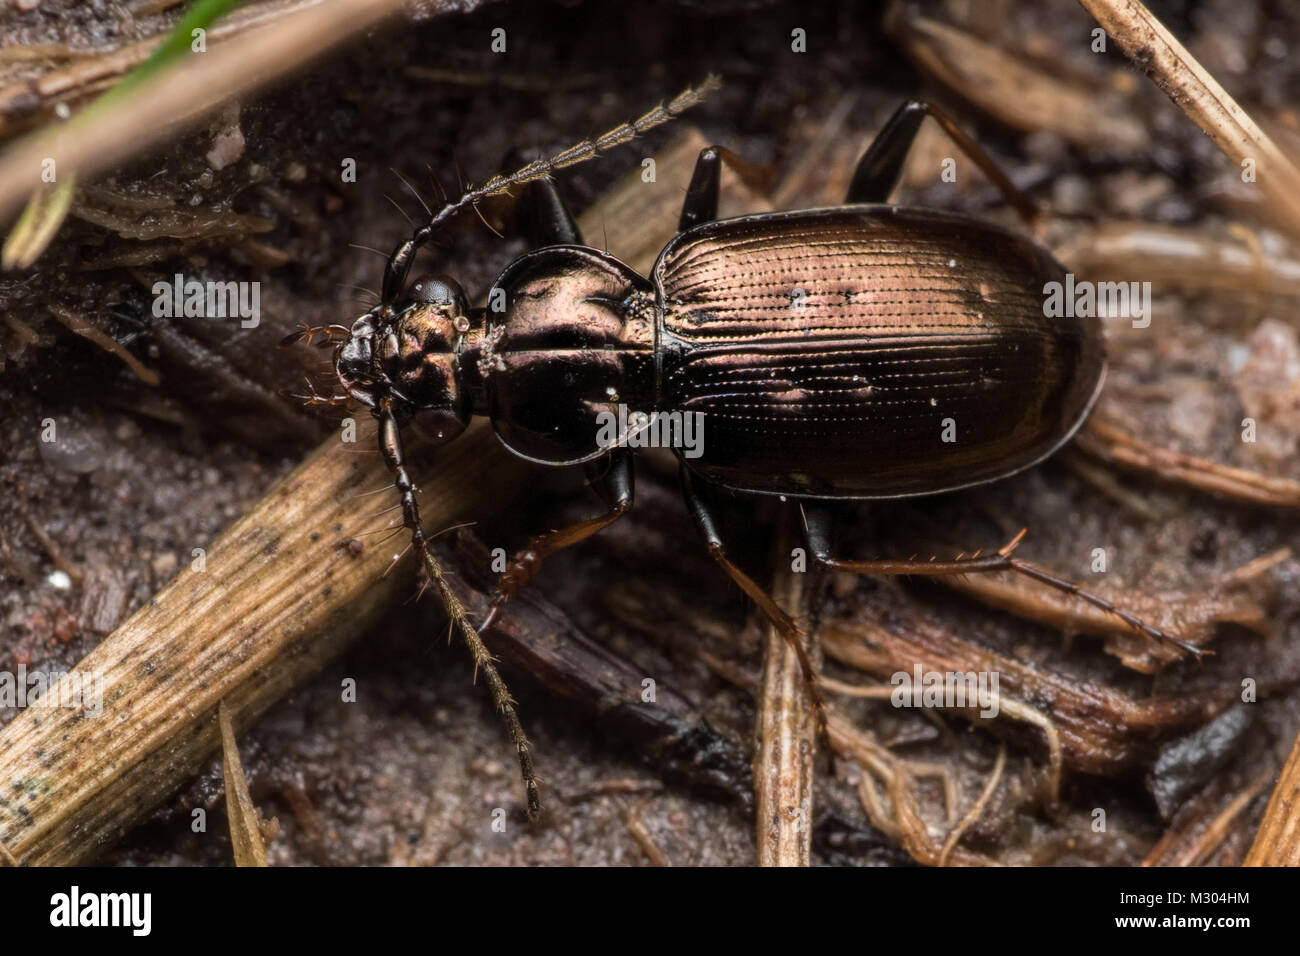 Escarabajo de tierra (Loricera pilicornis) en reposo sobre el suelo. Tipperary, Irlanda. Foto de stock